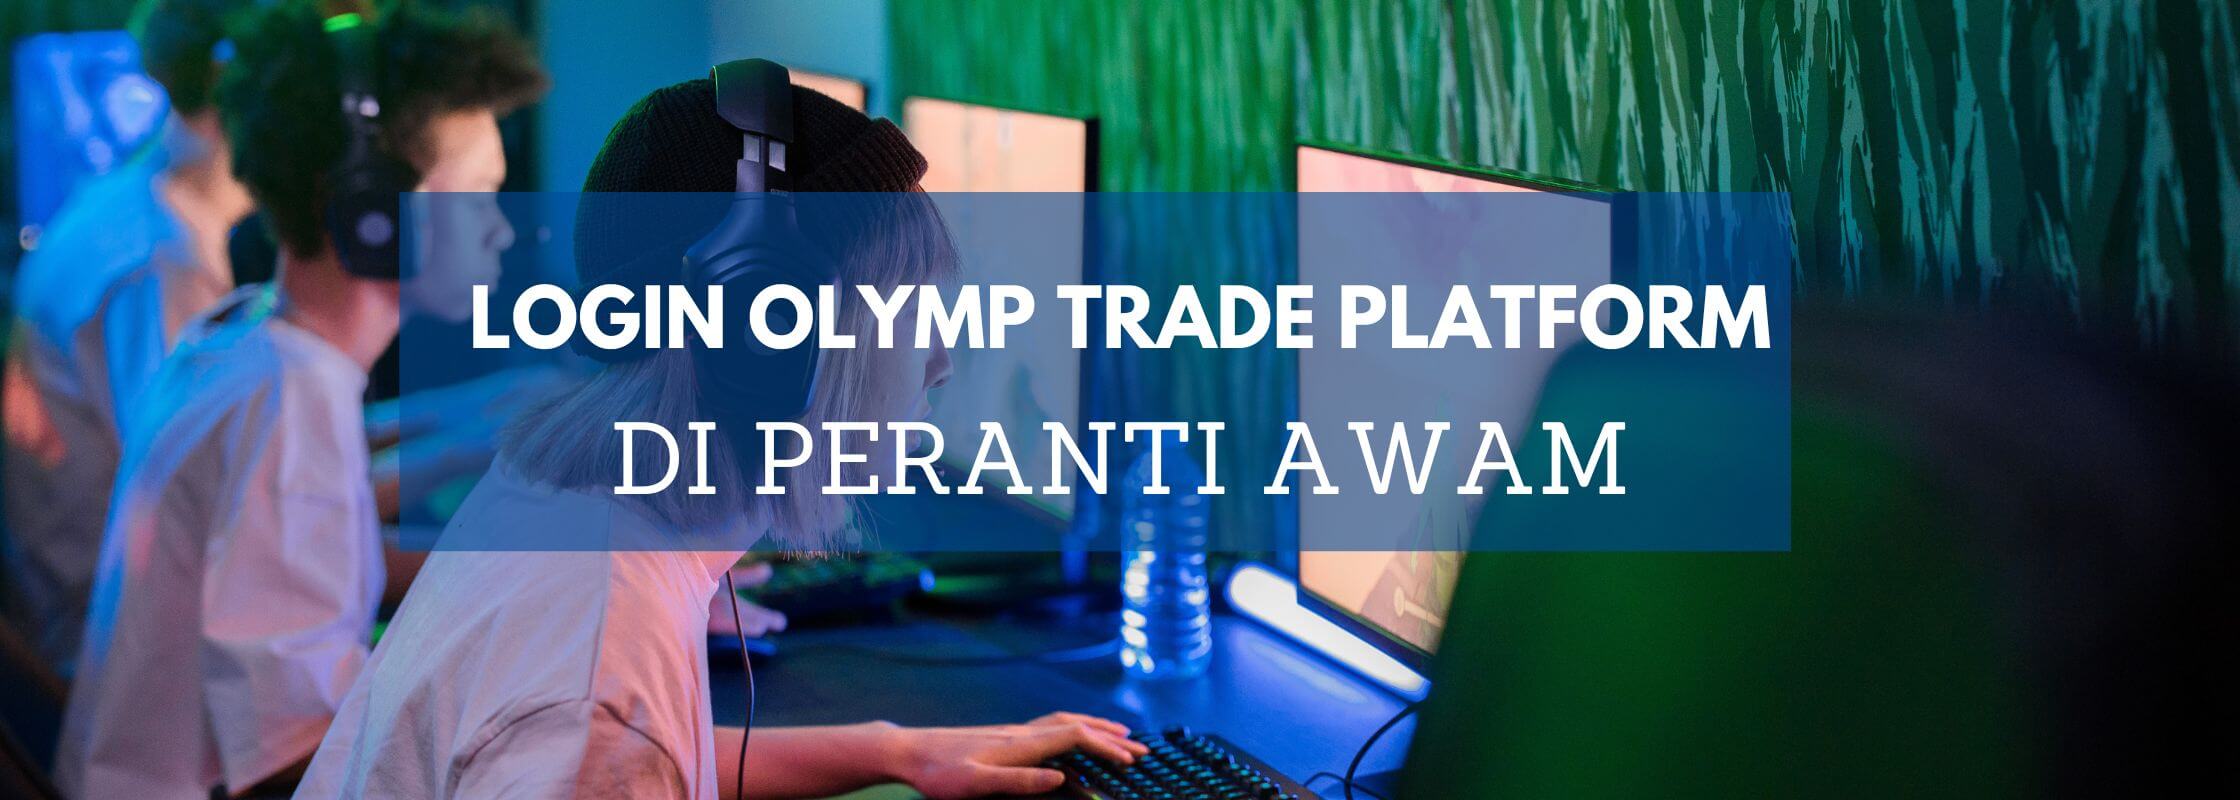 login olymp trade platform